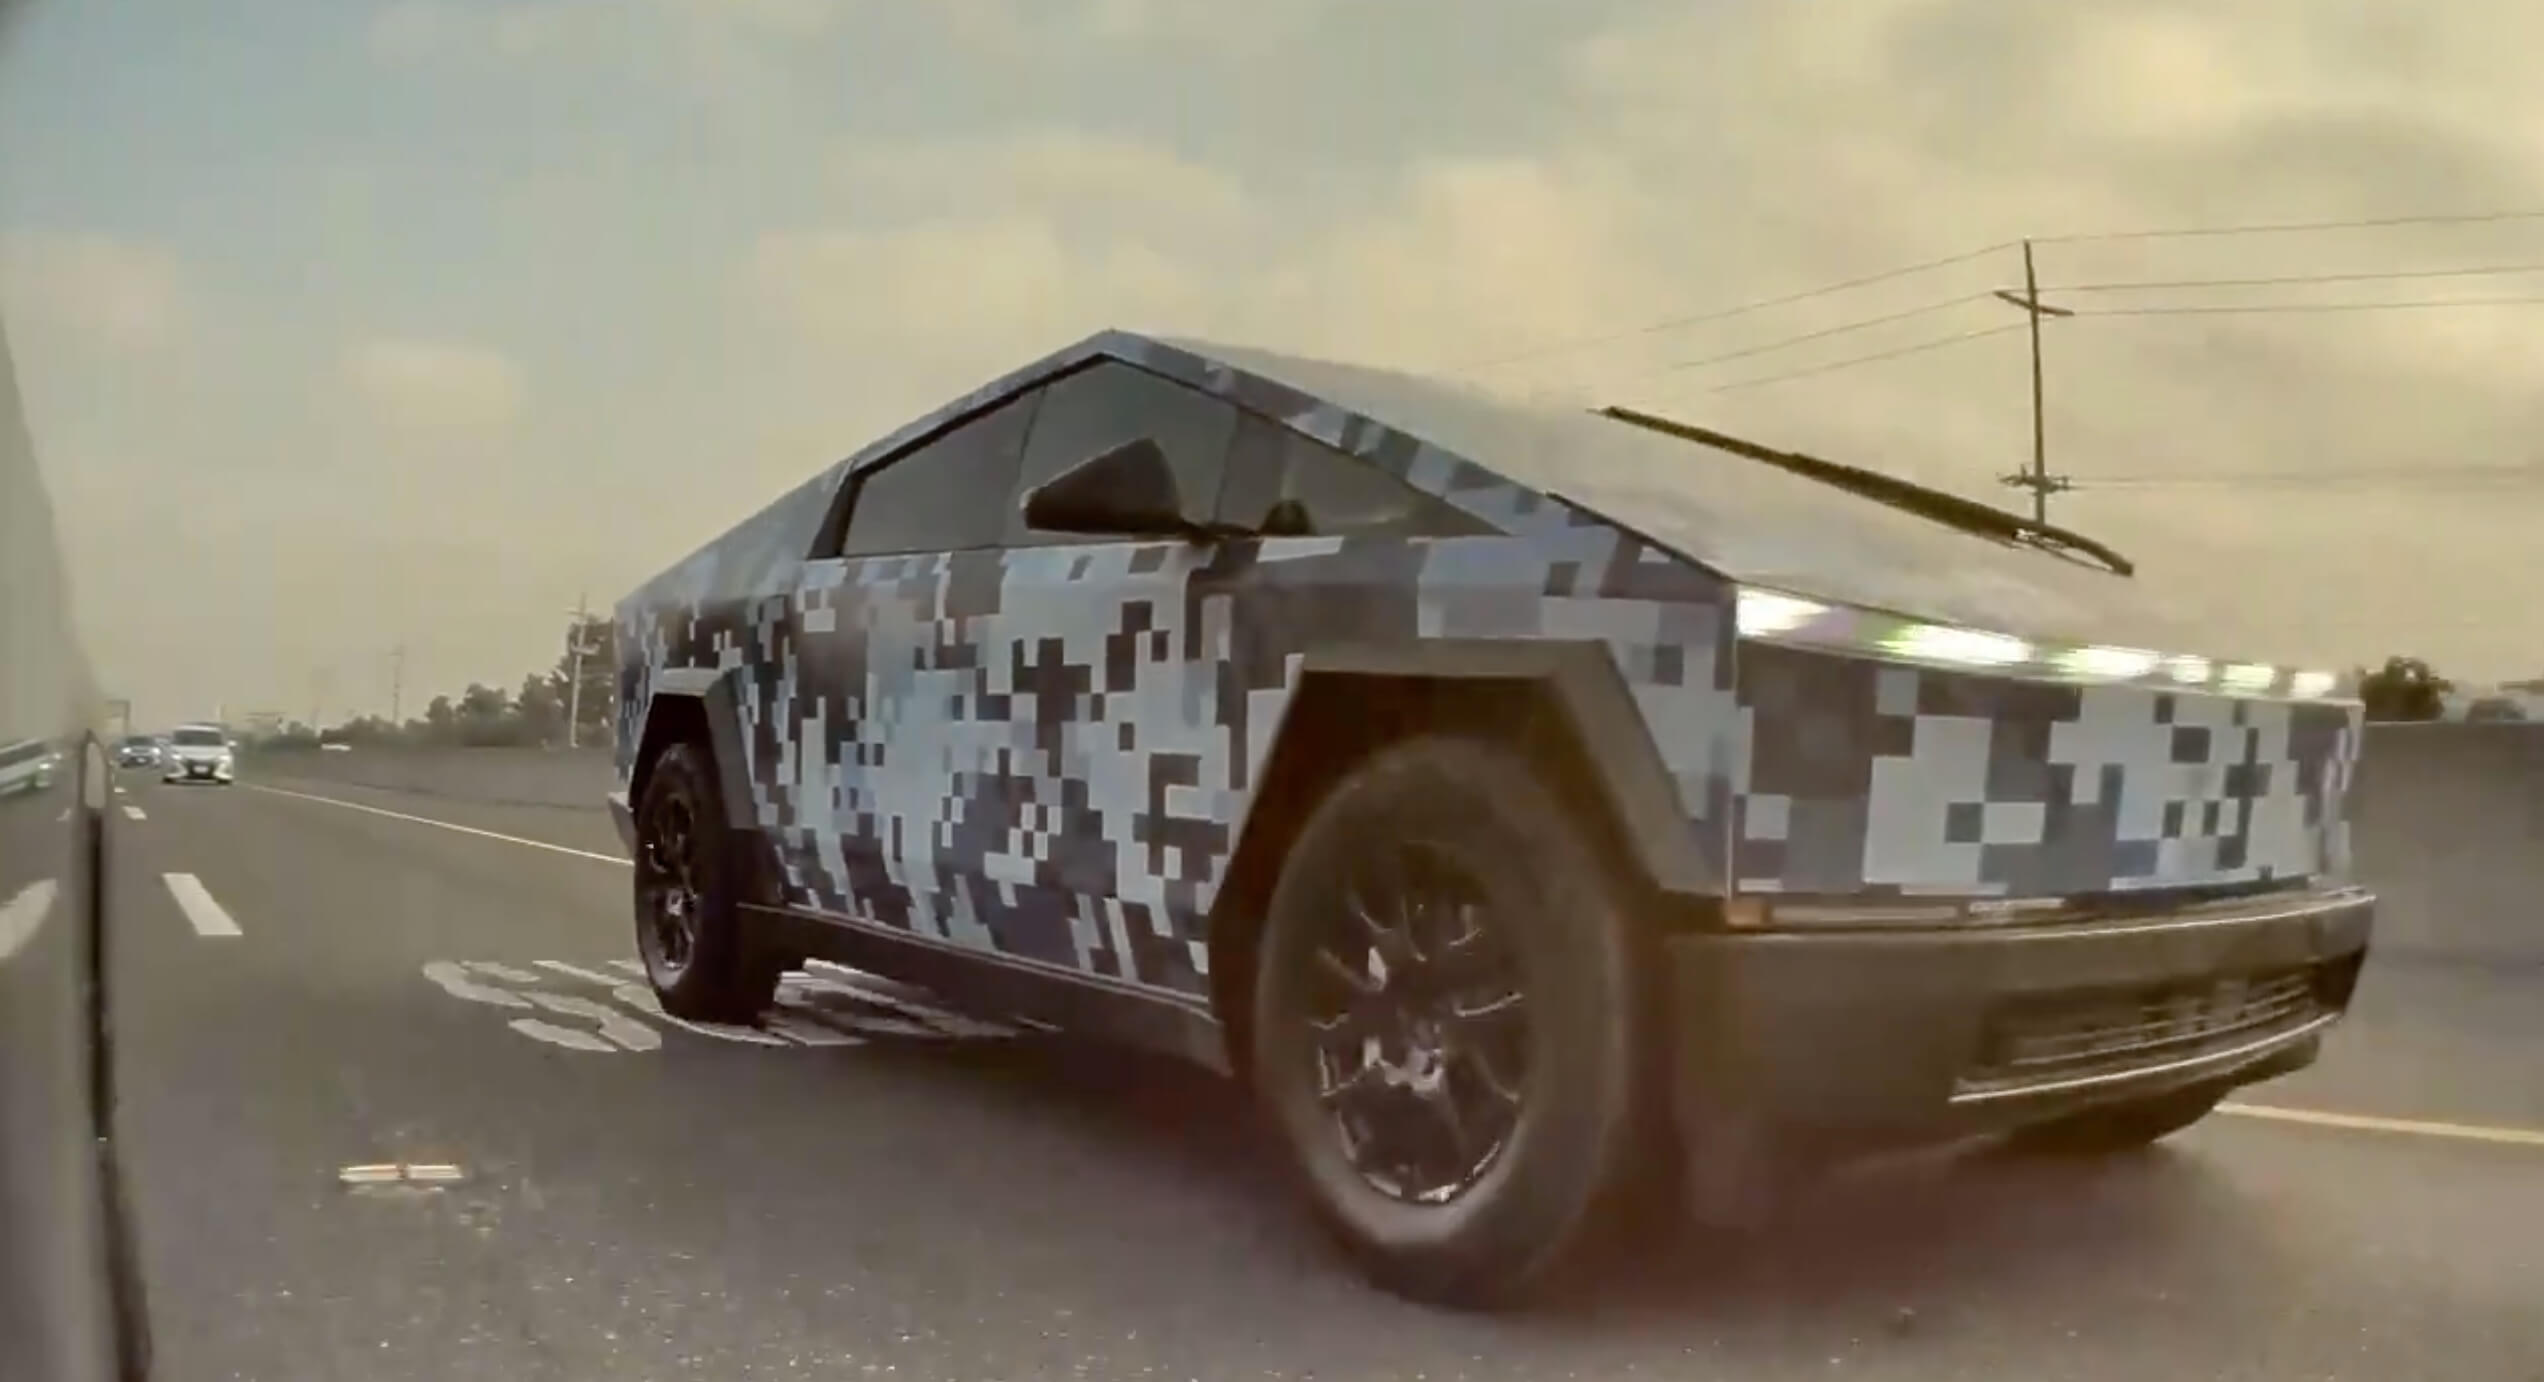 Vea el Cybertruck digital azul de Tesla envuelto en camuflaje en video